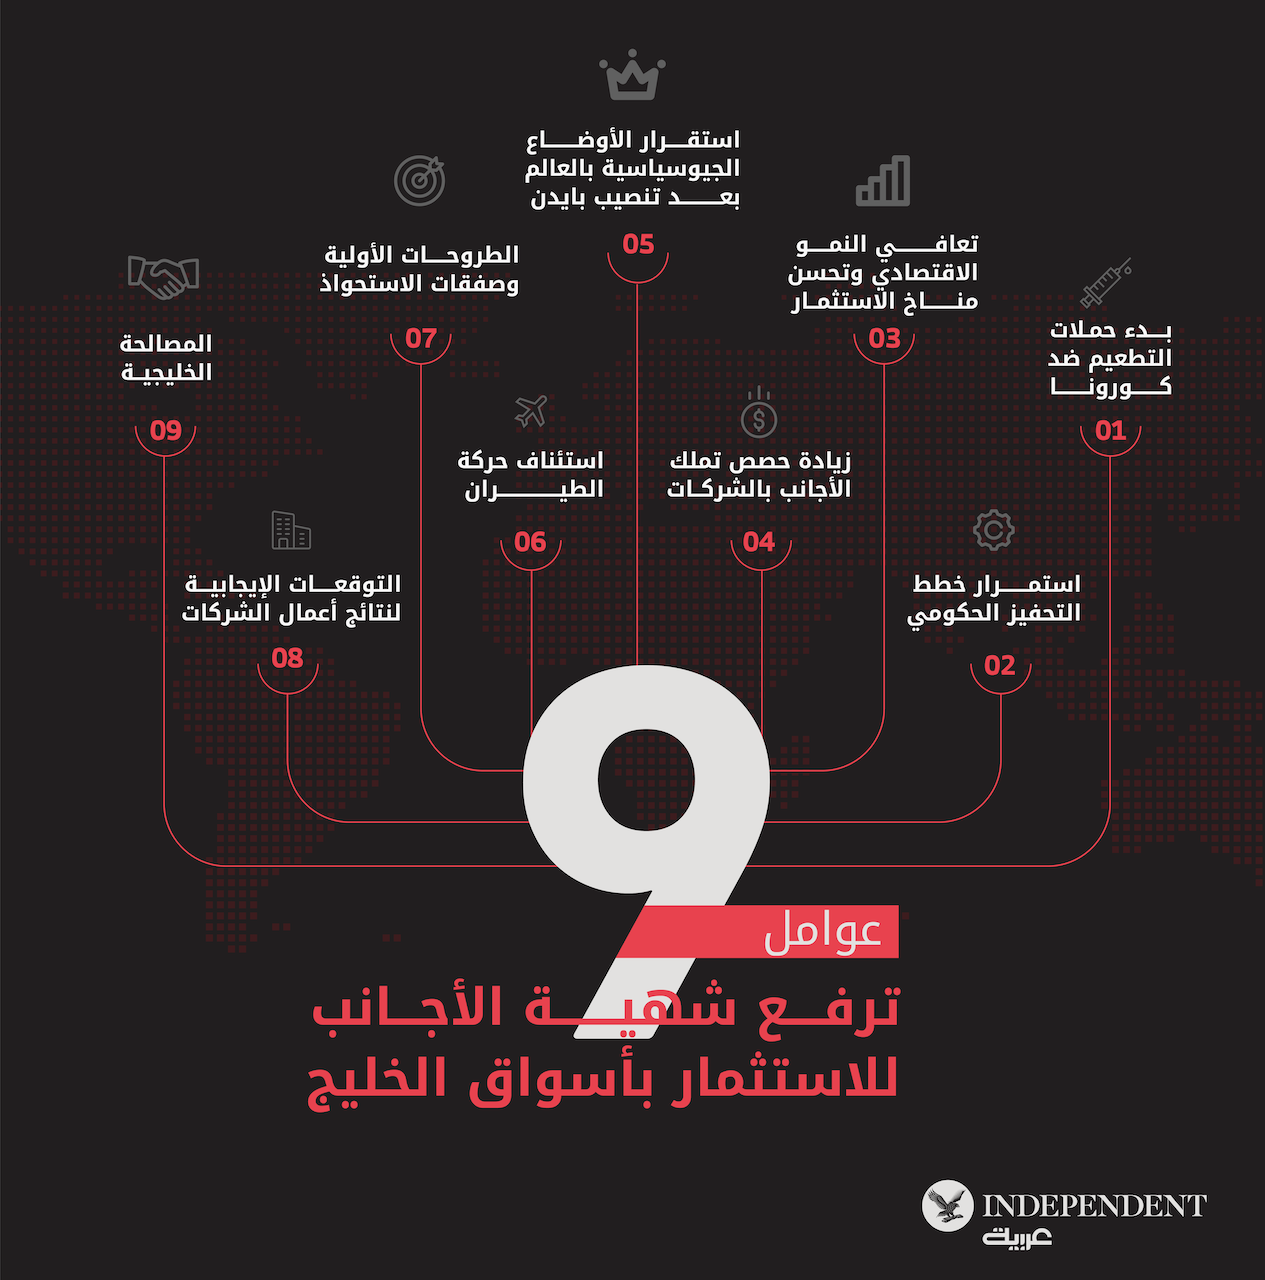 9عوامل ترفع شهية الأجانب للاستثمار بأسواق الخليج-01.png